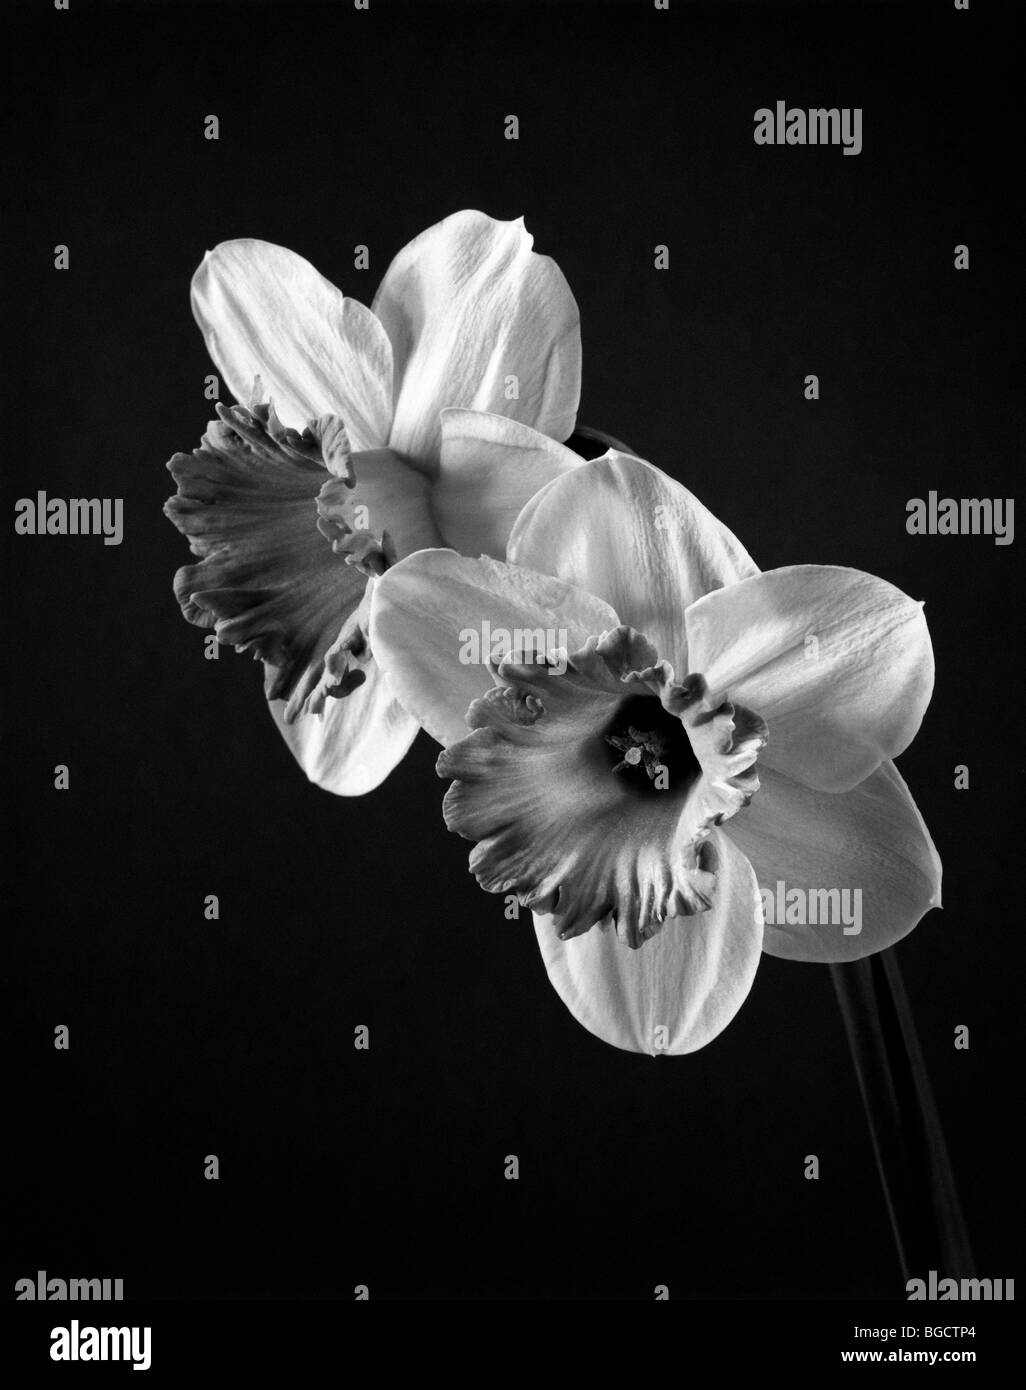 WASHINGTON - Daffodil fiore in bianco e nero. Foto Stock